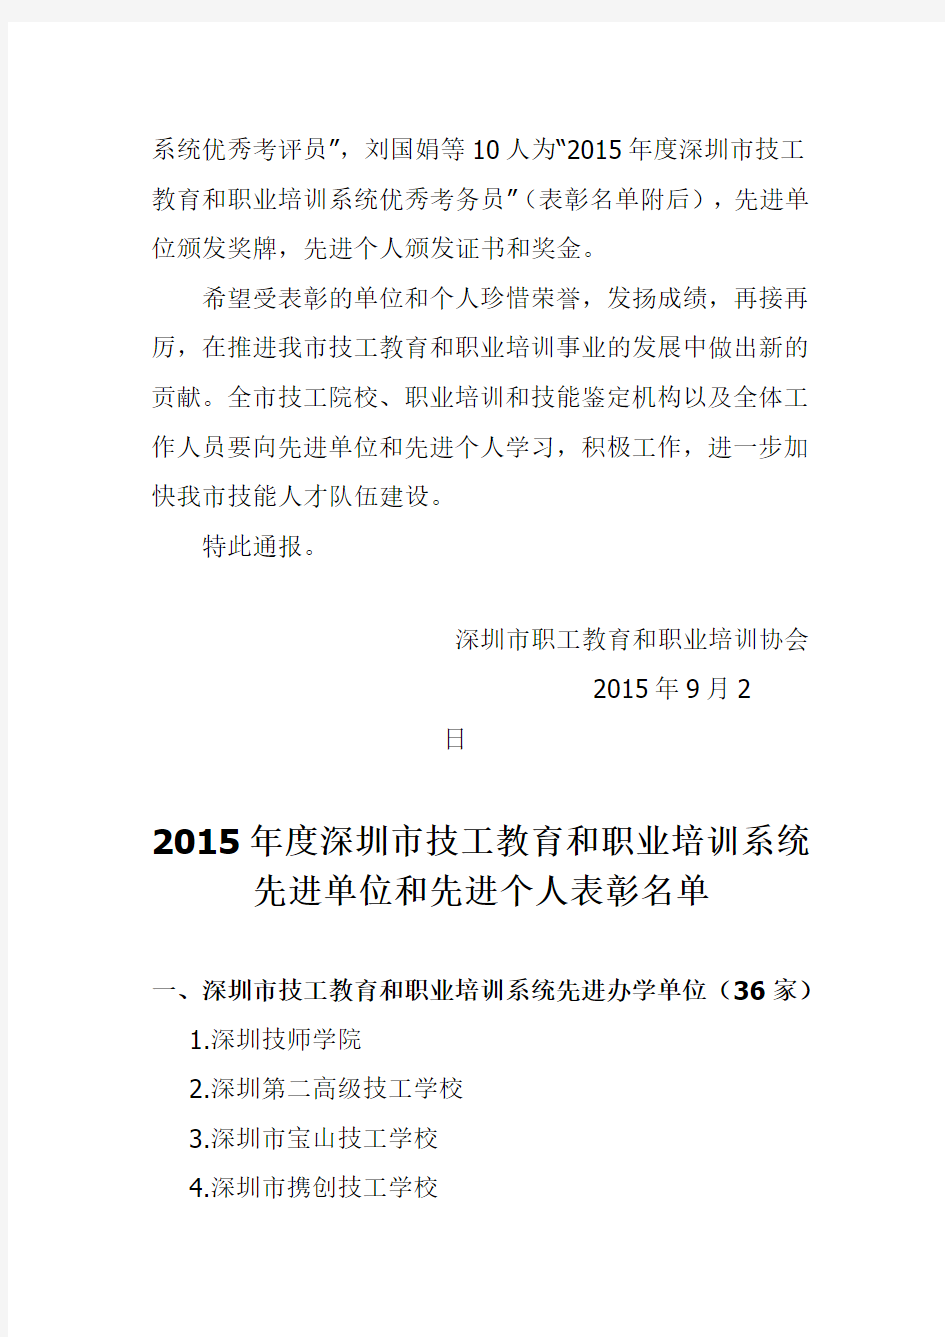 关于表彰2015年度深圳市技工教育和职业培训系统先进单位和先进个人的决定